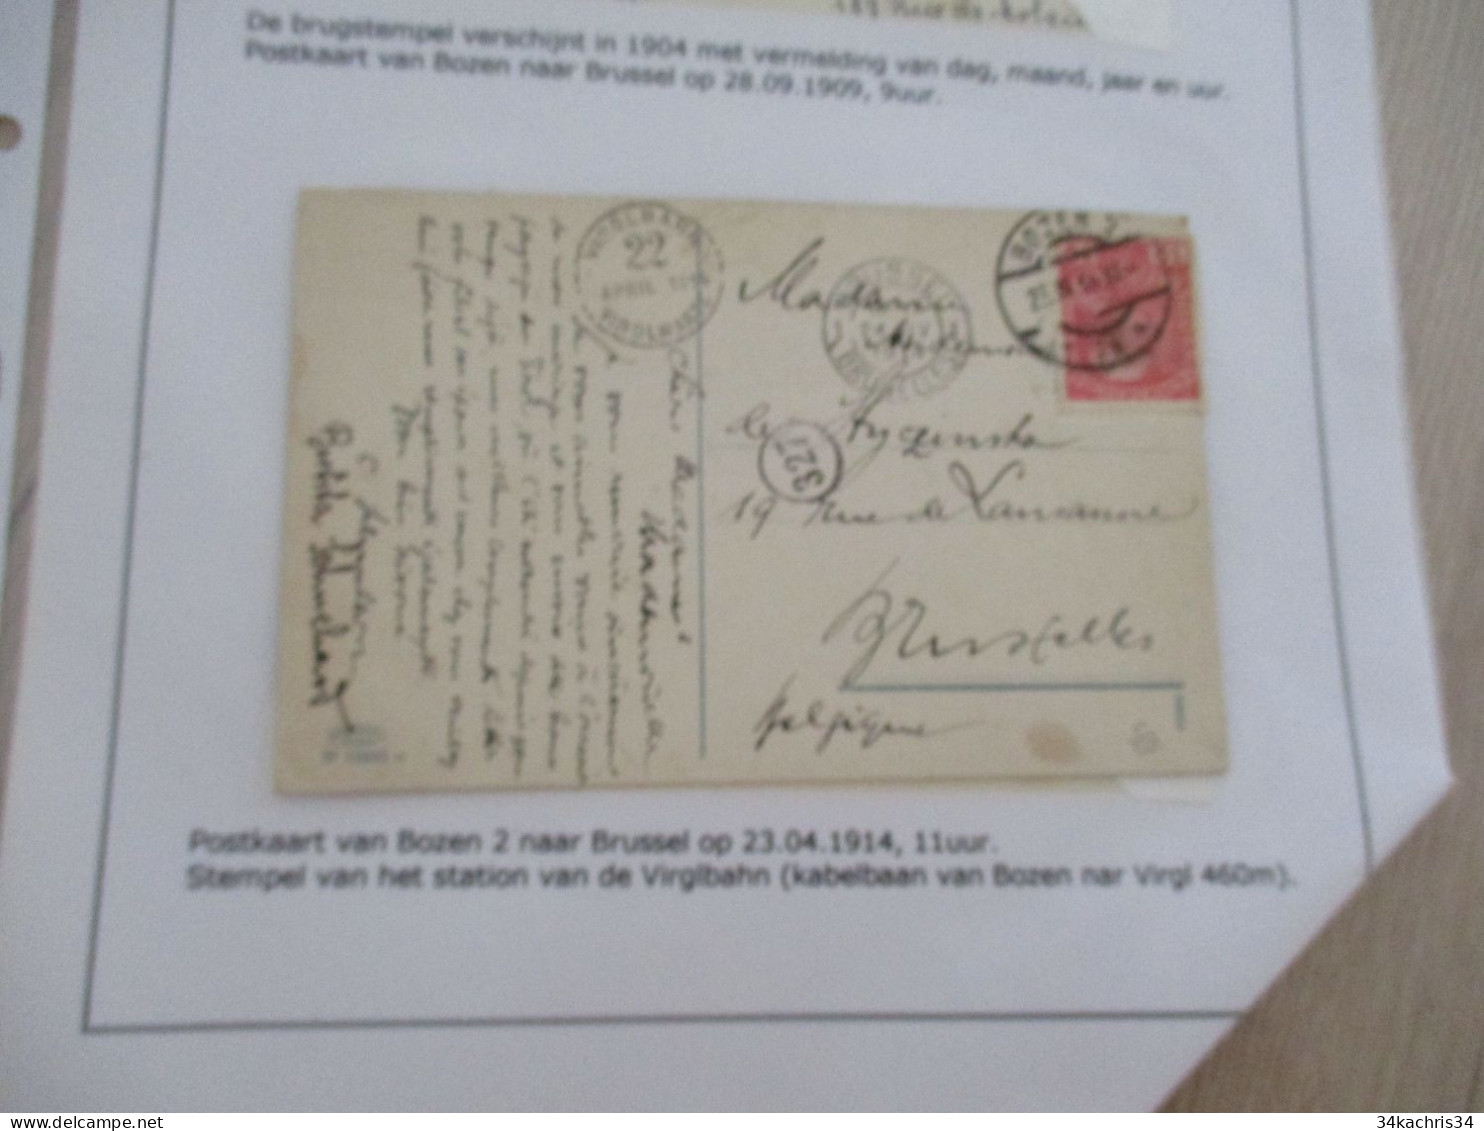 Collection Spécialisée ITALIE/Autriche K.u.K. Monarchie CPA Bozen 2 Vers Brussel 23/04/1914 - Briefe U. Dokumente